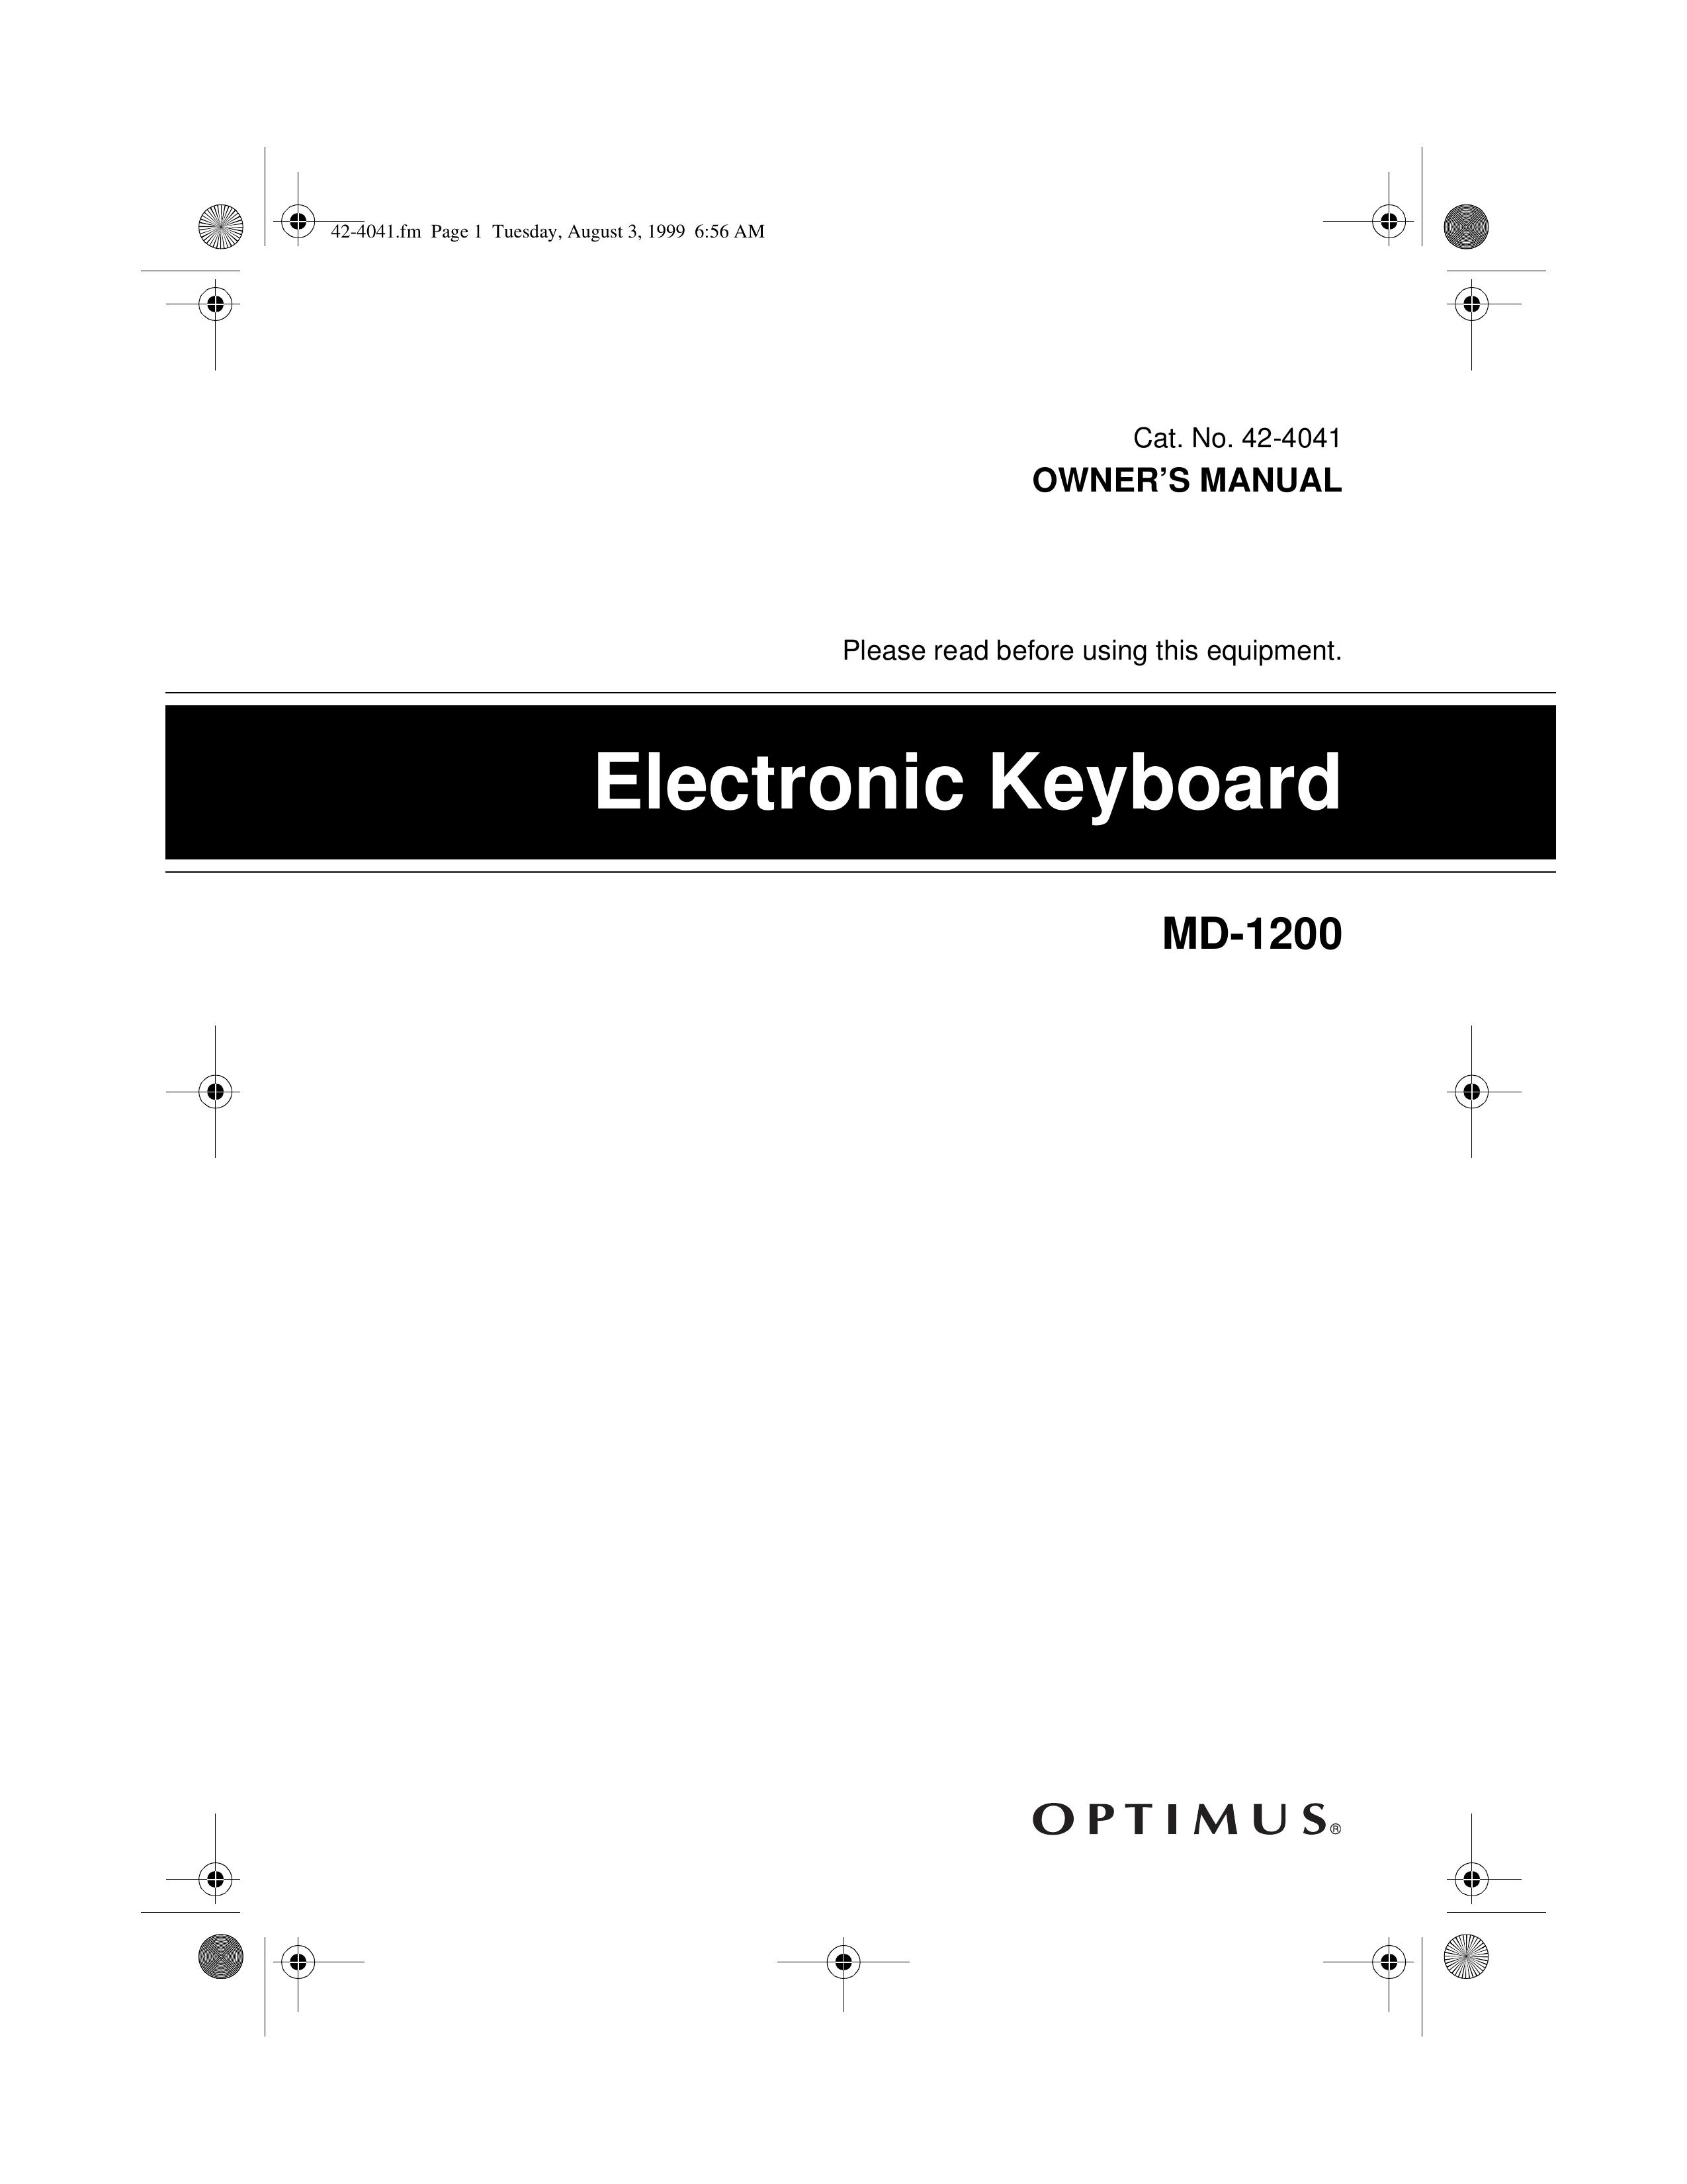 Optimus MD-1200 Electronic Keyboard User Manual